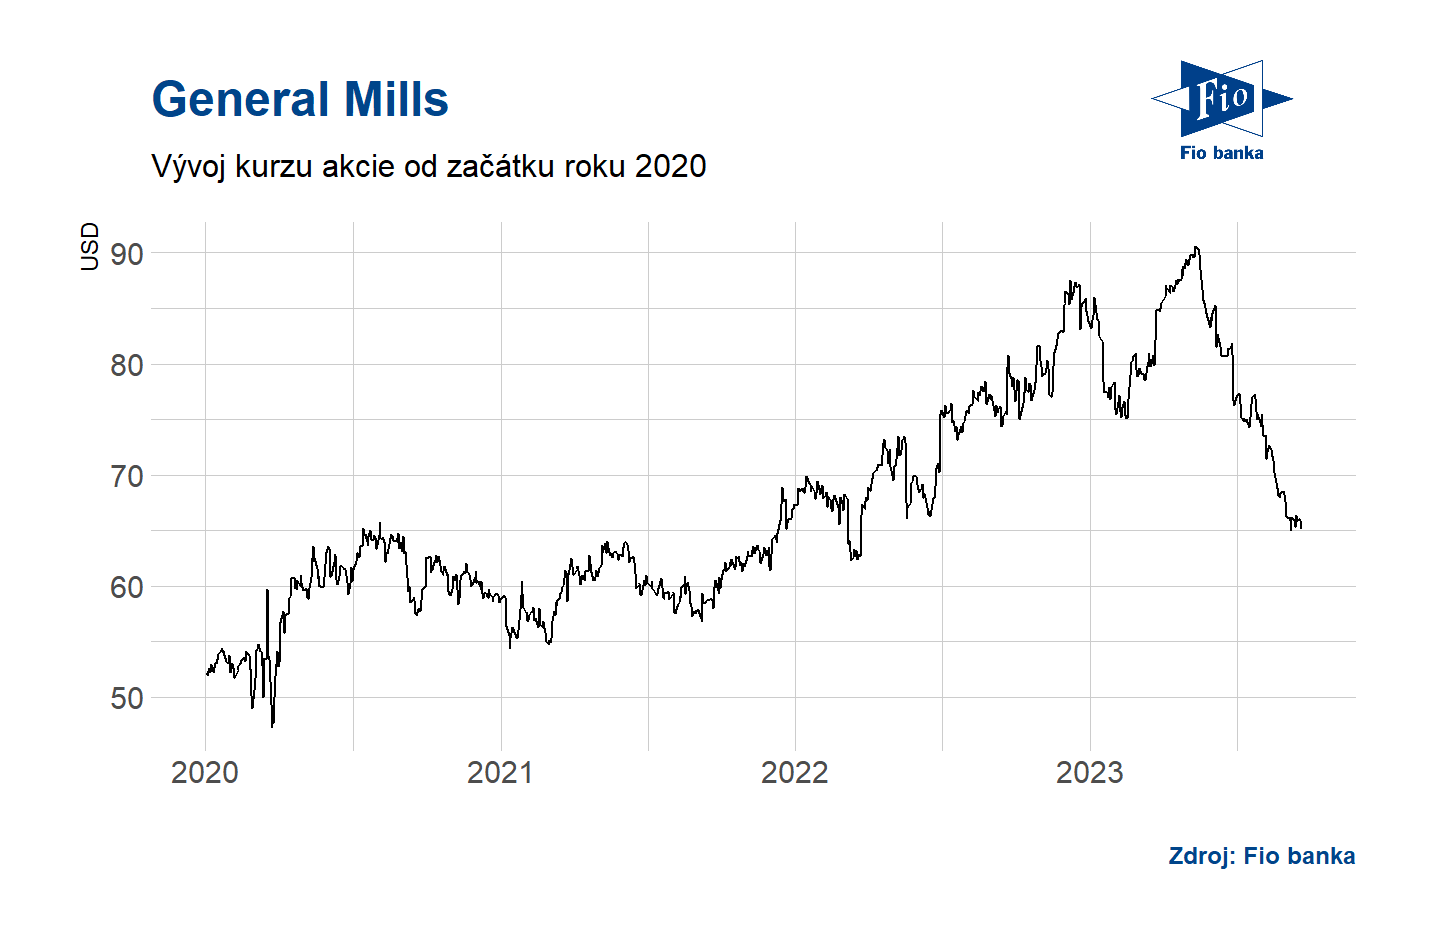 Vývoj ceny akcie General Mills